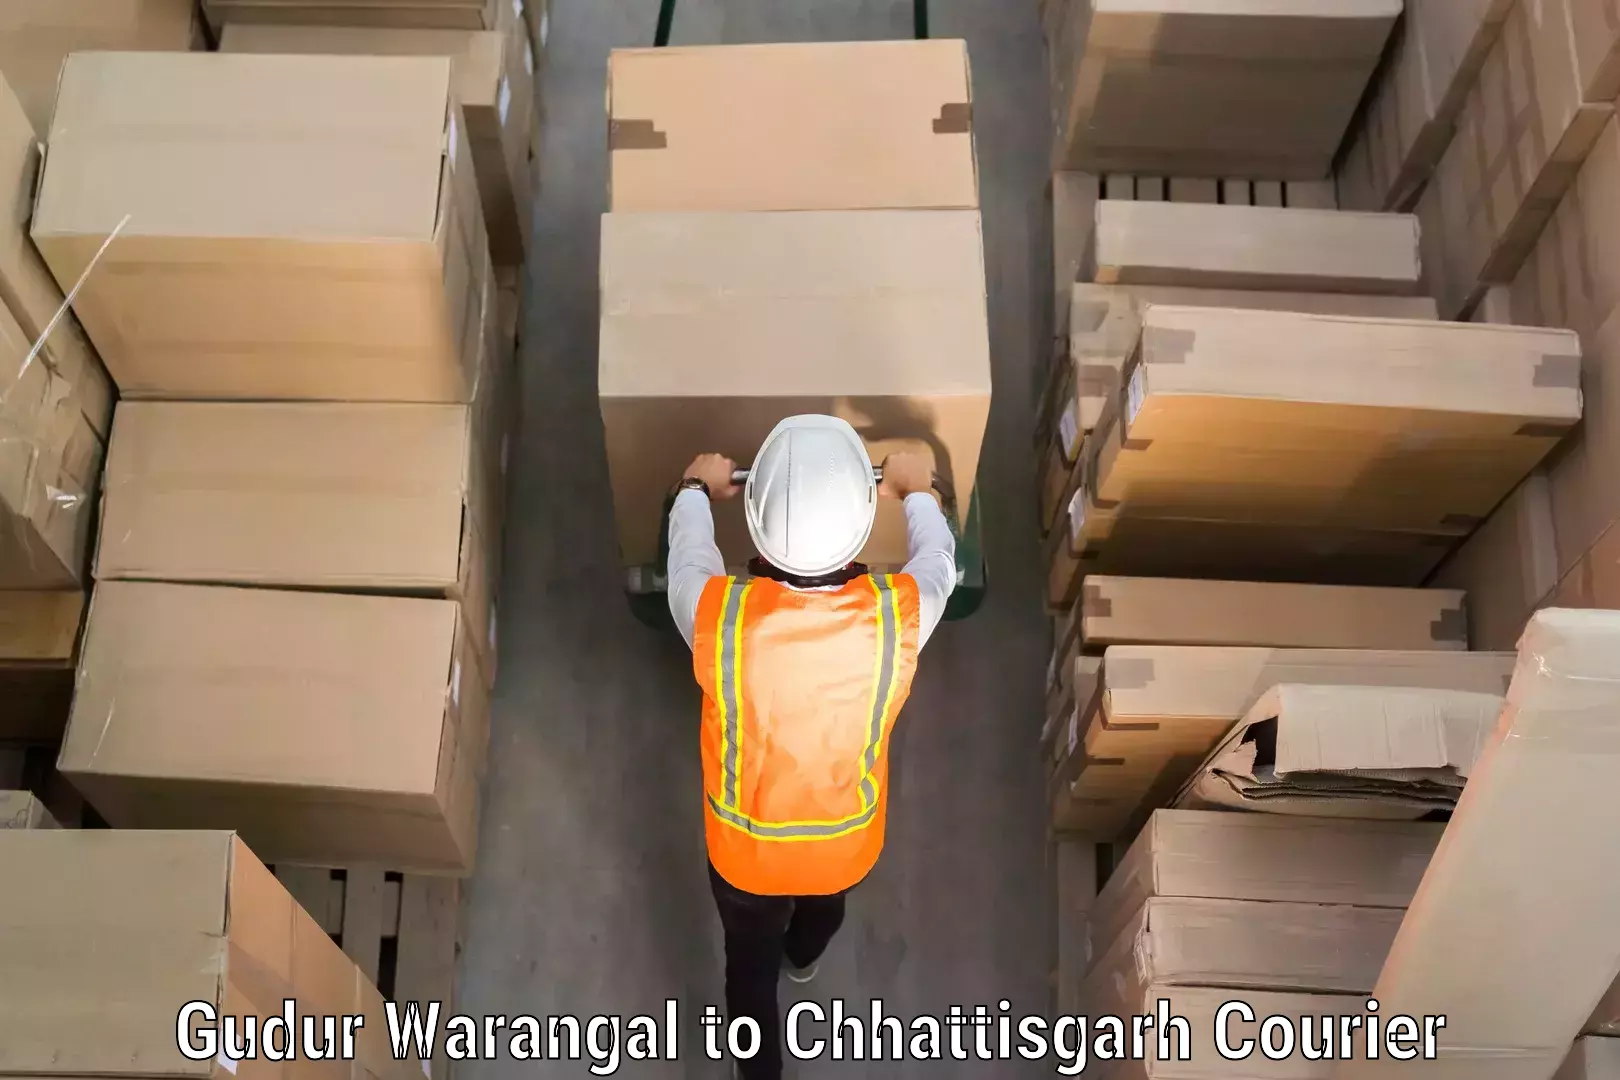 Baggage shipping service Gudur Warangal to Sakti